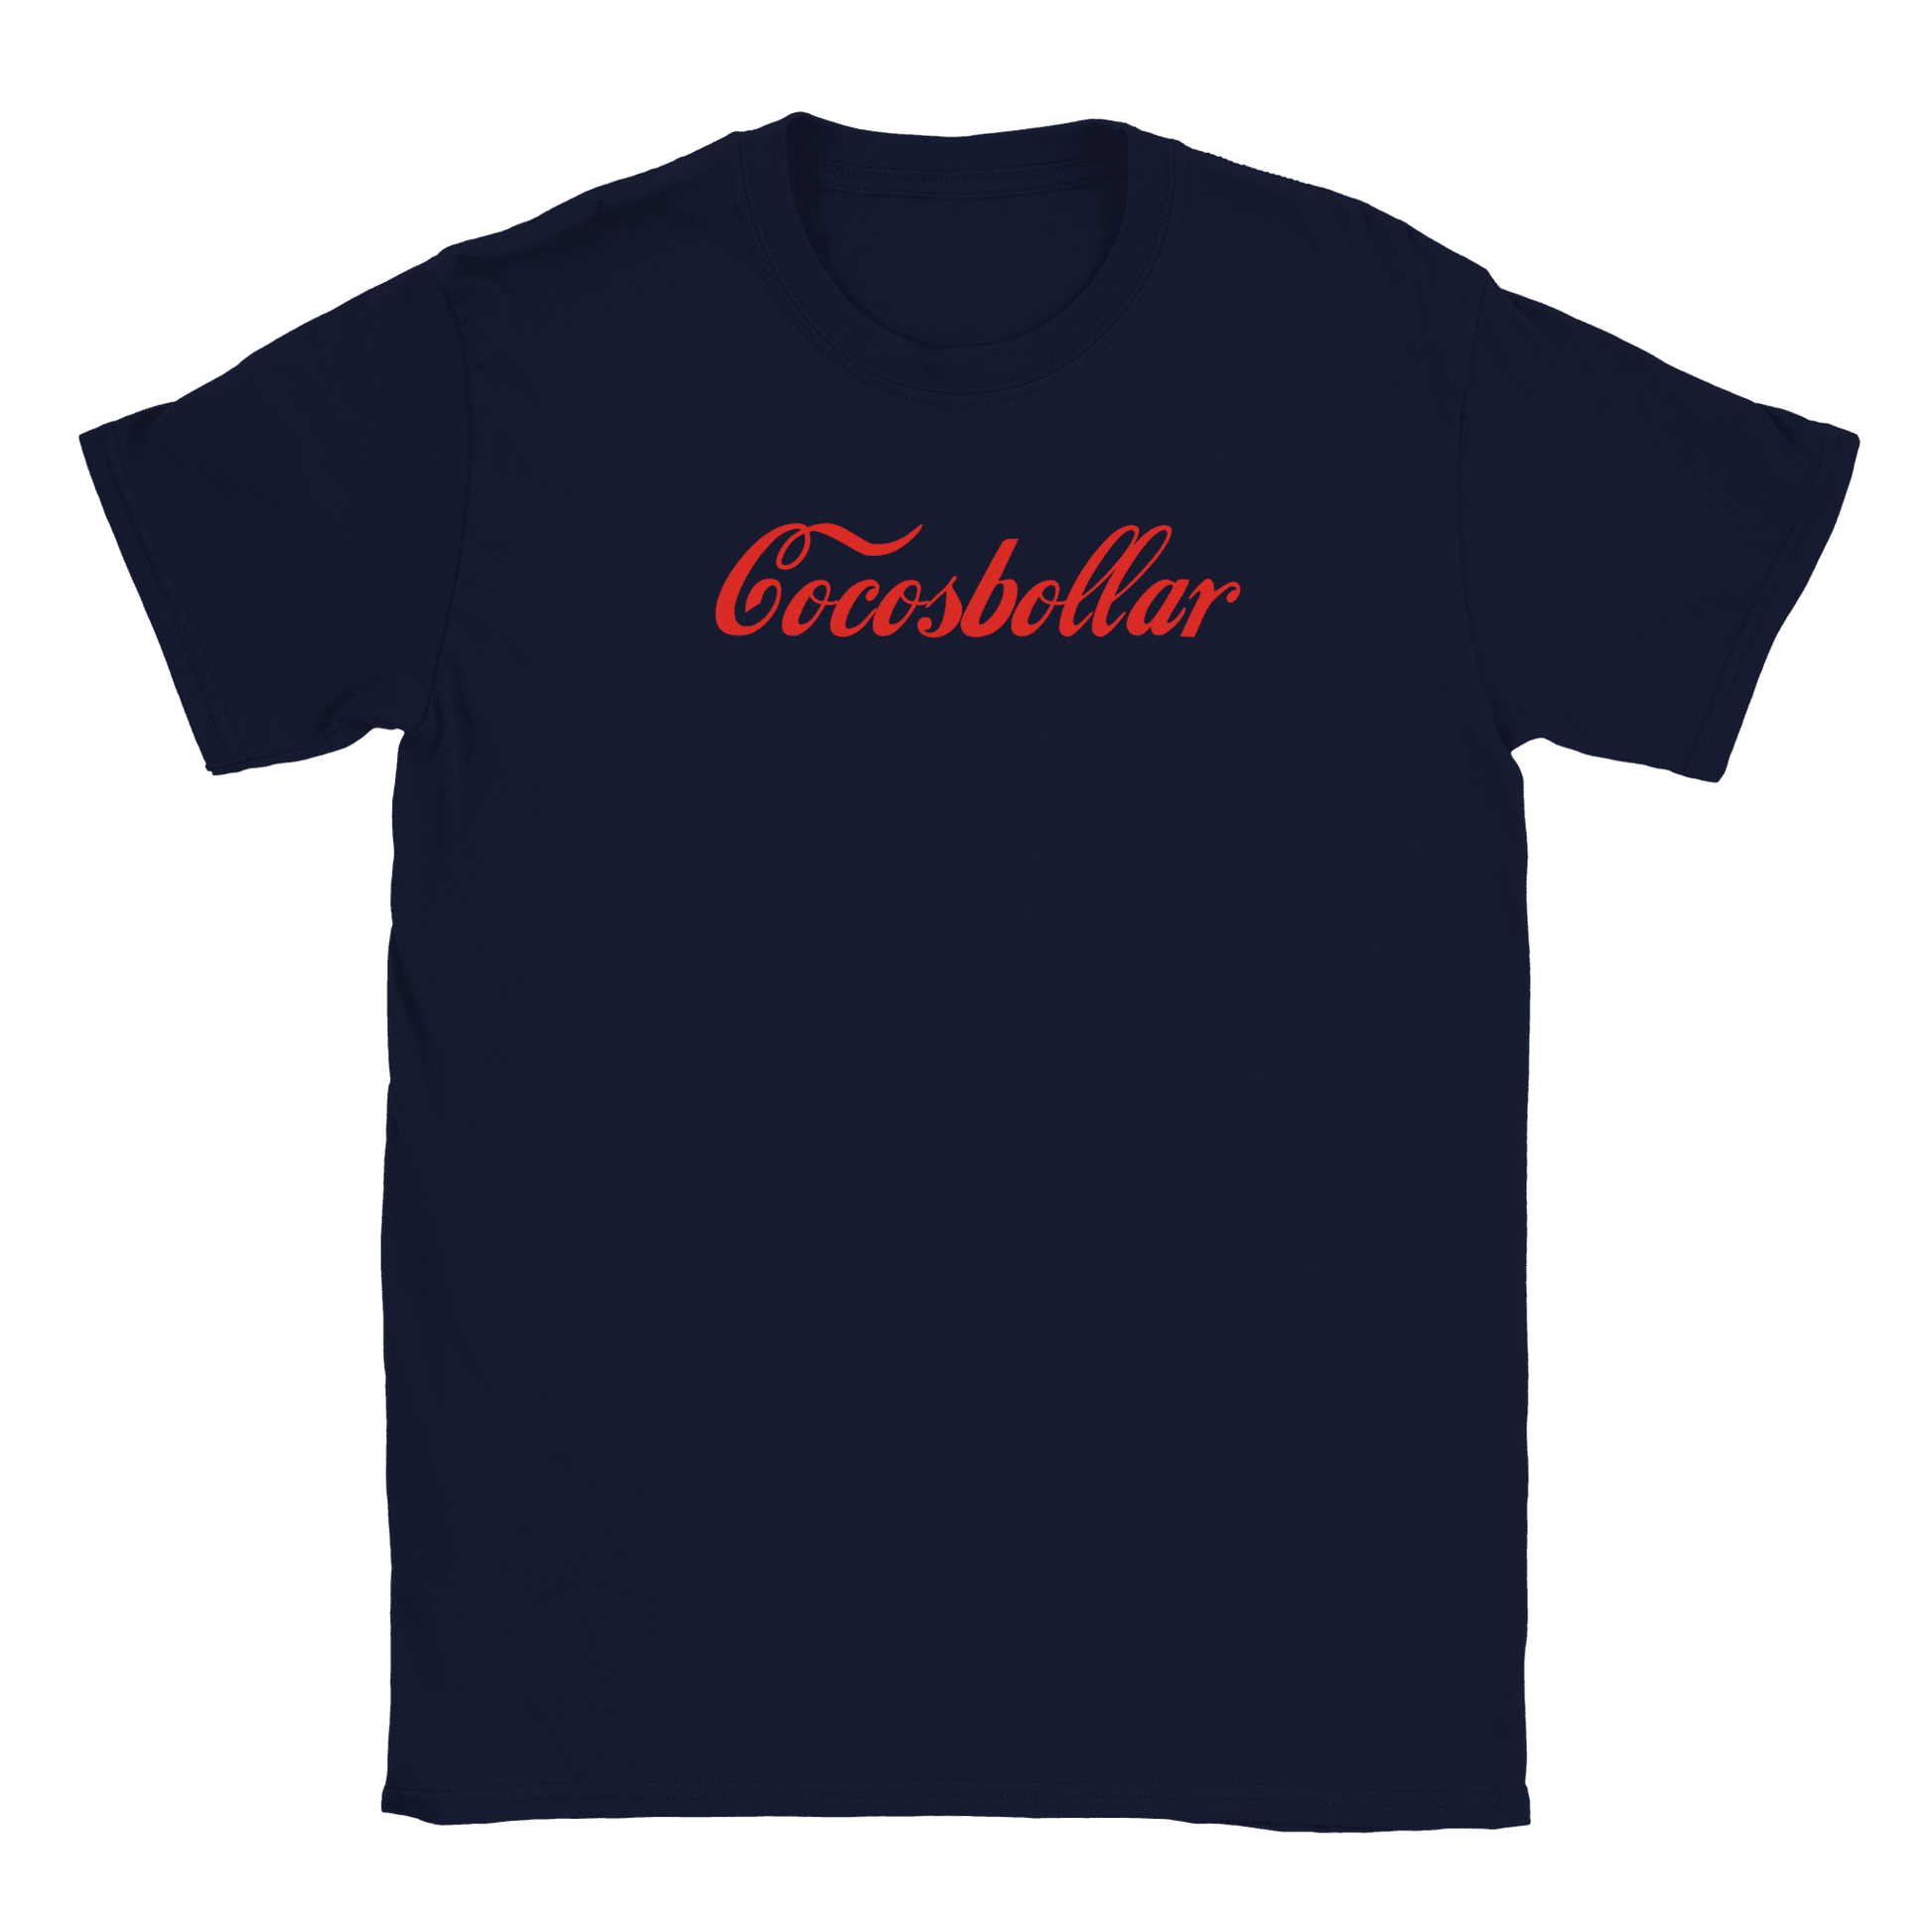 Cocosbollar - T-shirt Marinblå